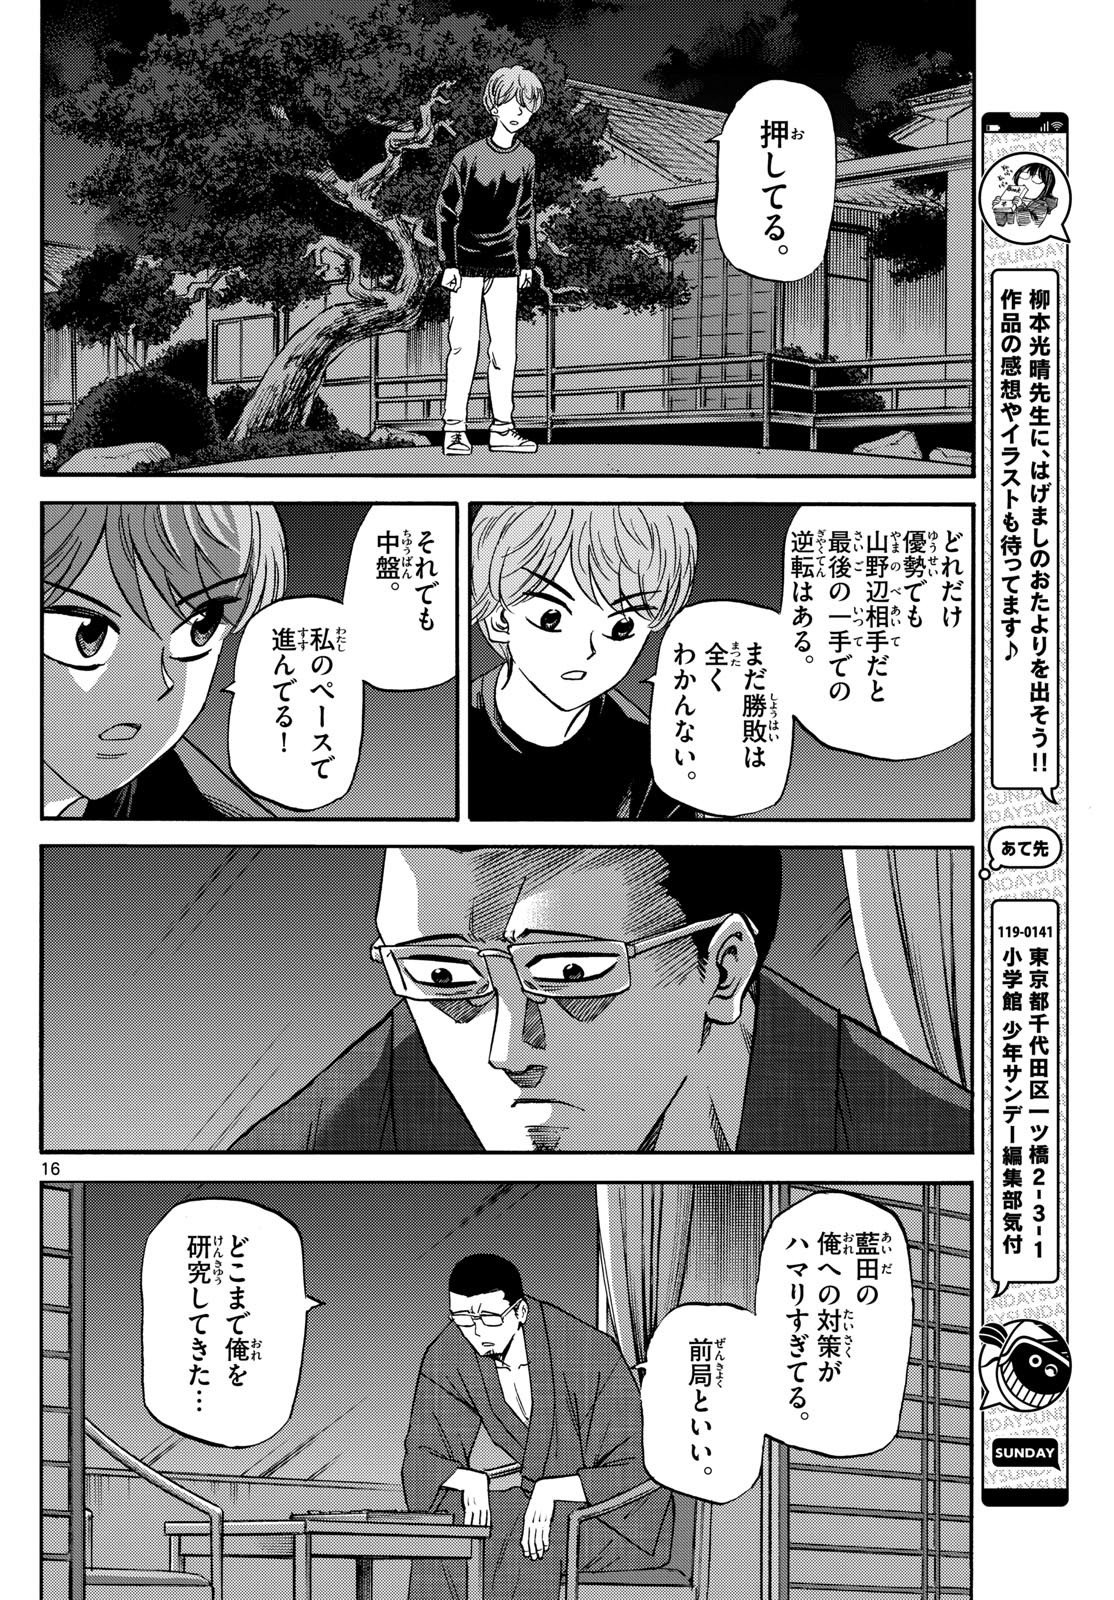 Ryu-to-Ichigo - Chapter 169 - Page 16